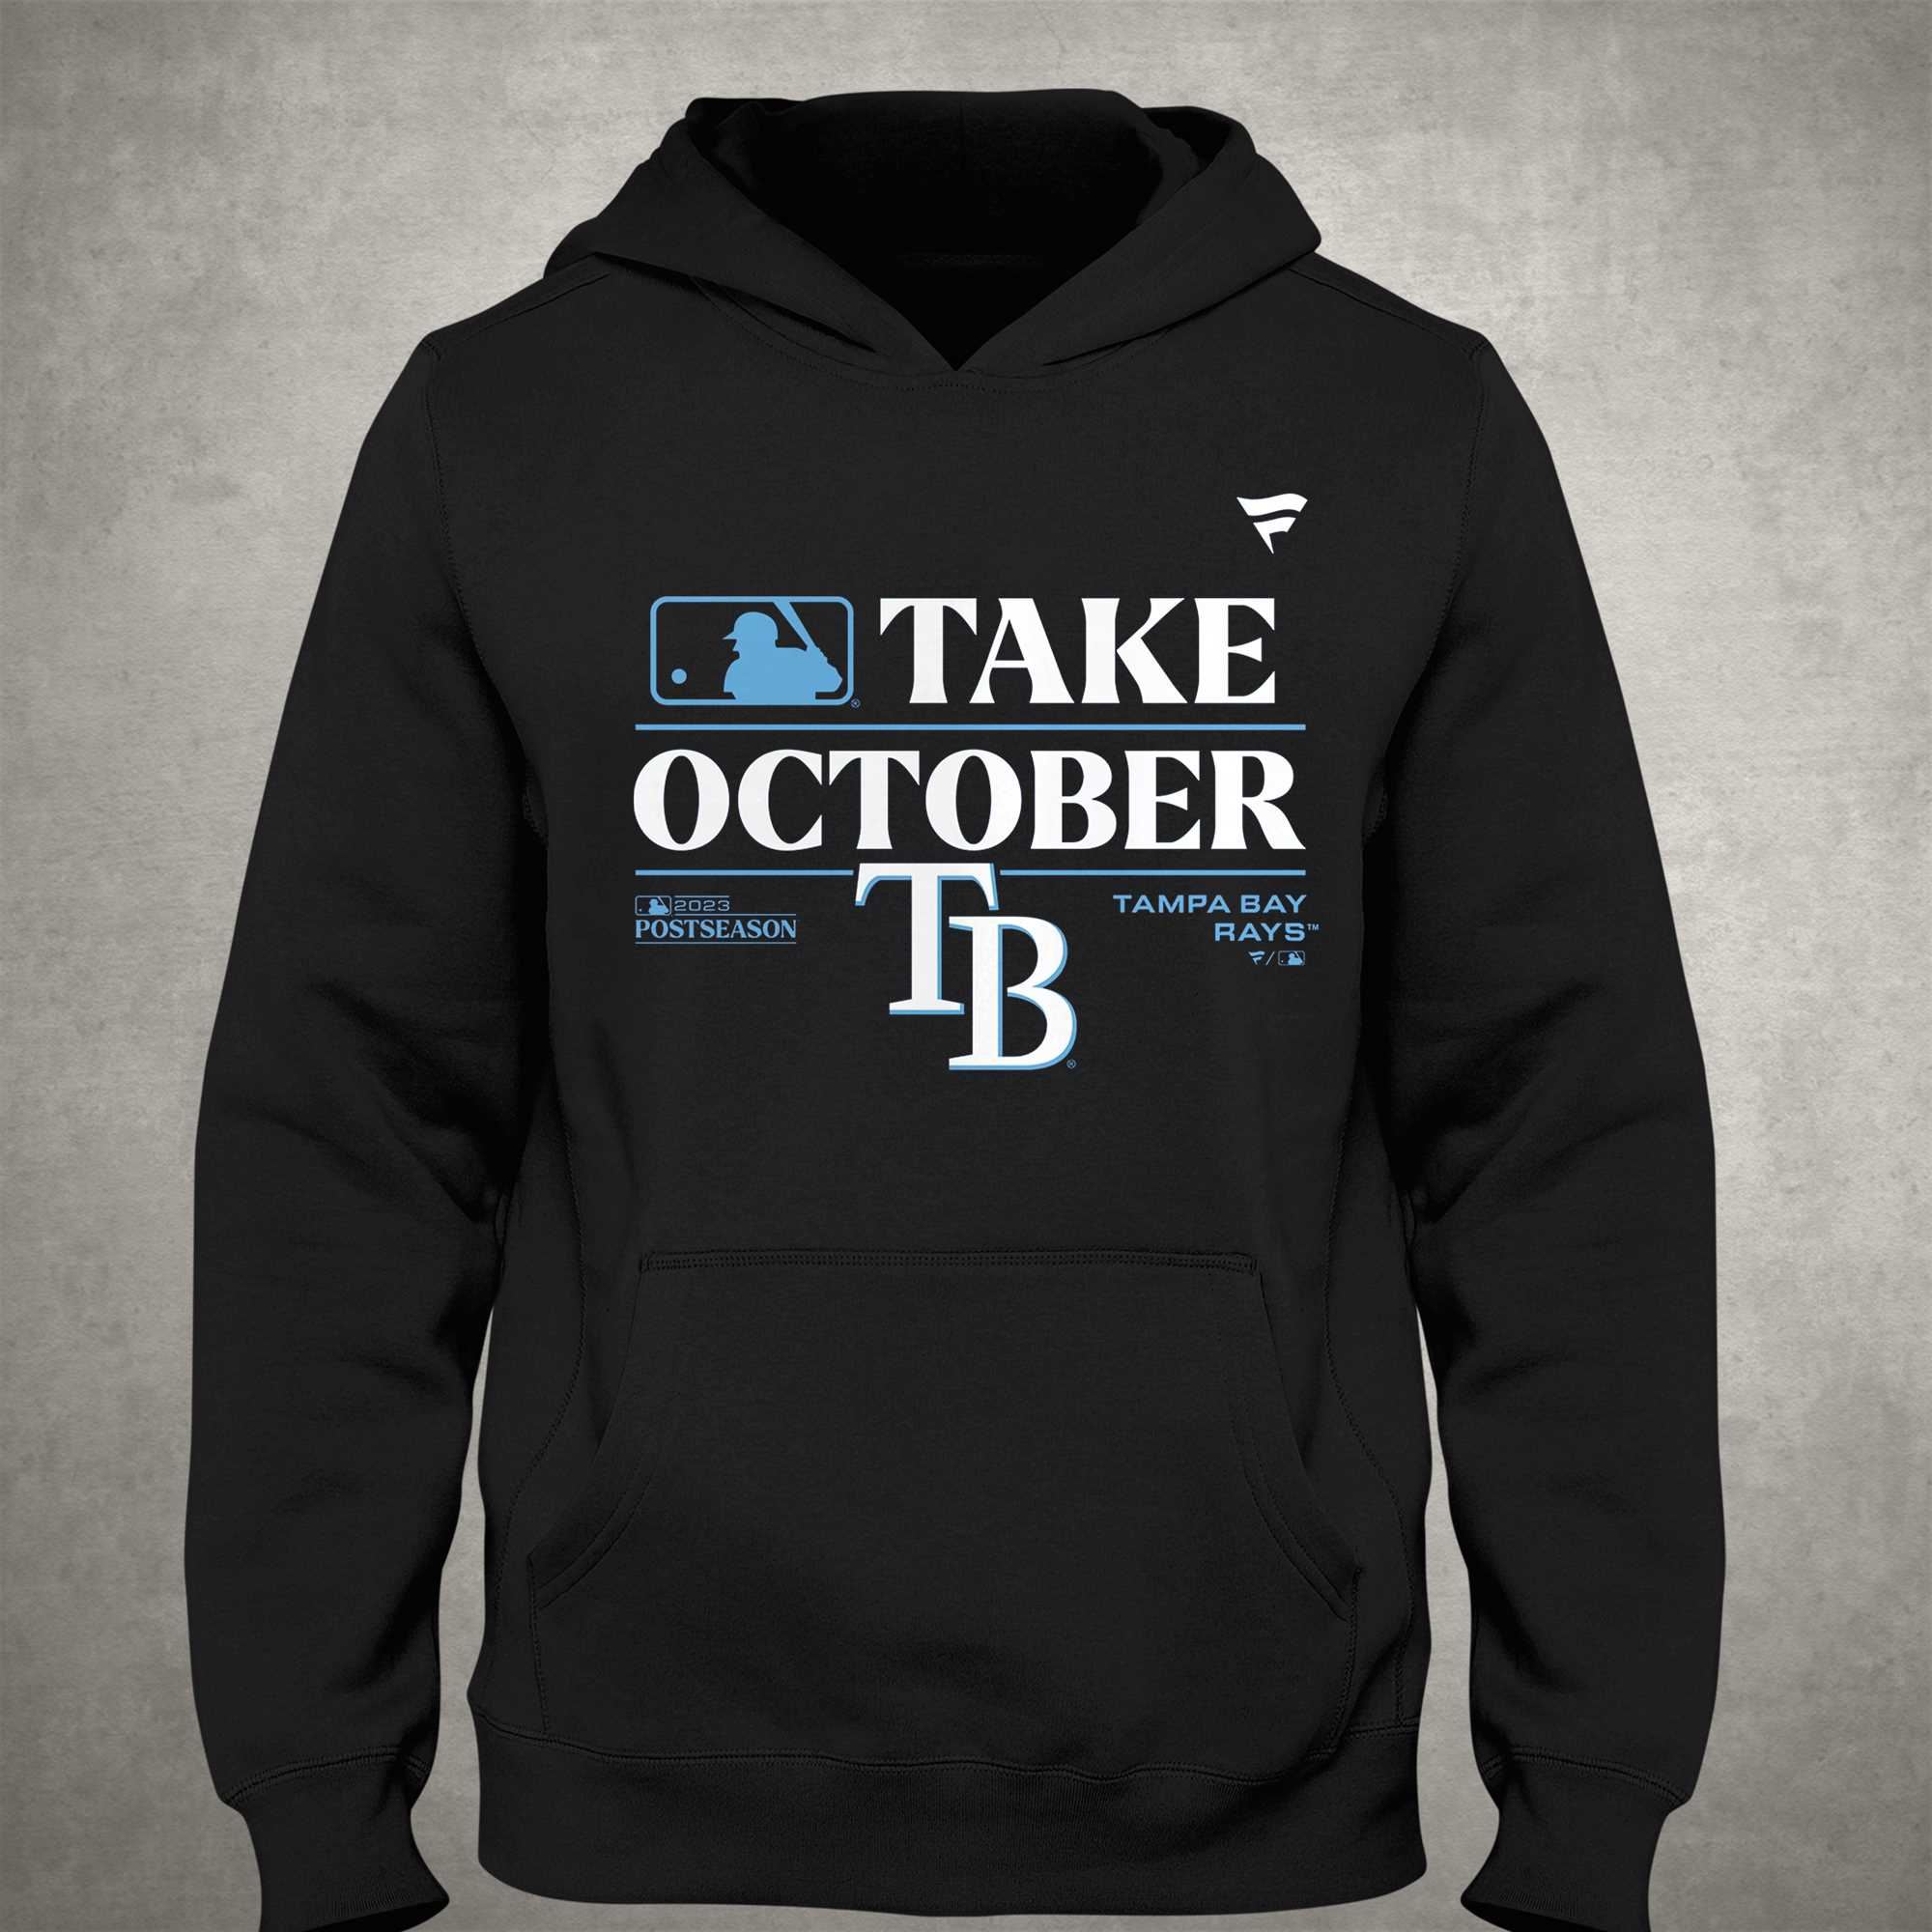 Tampa Bay Rays Take October 2023 Postseason shirt, hoodie, sweater